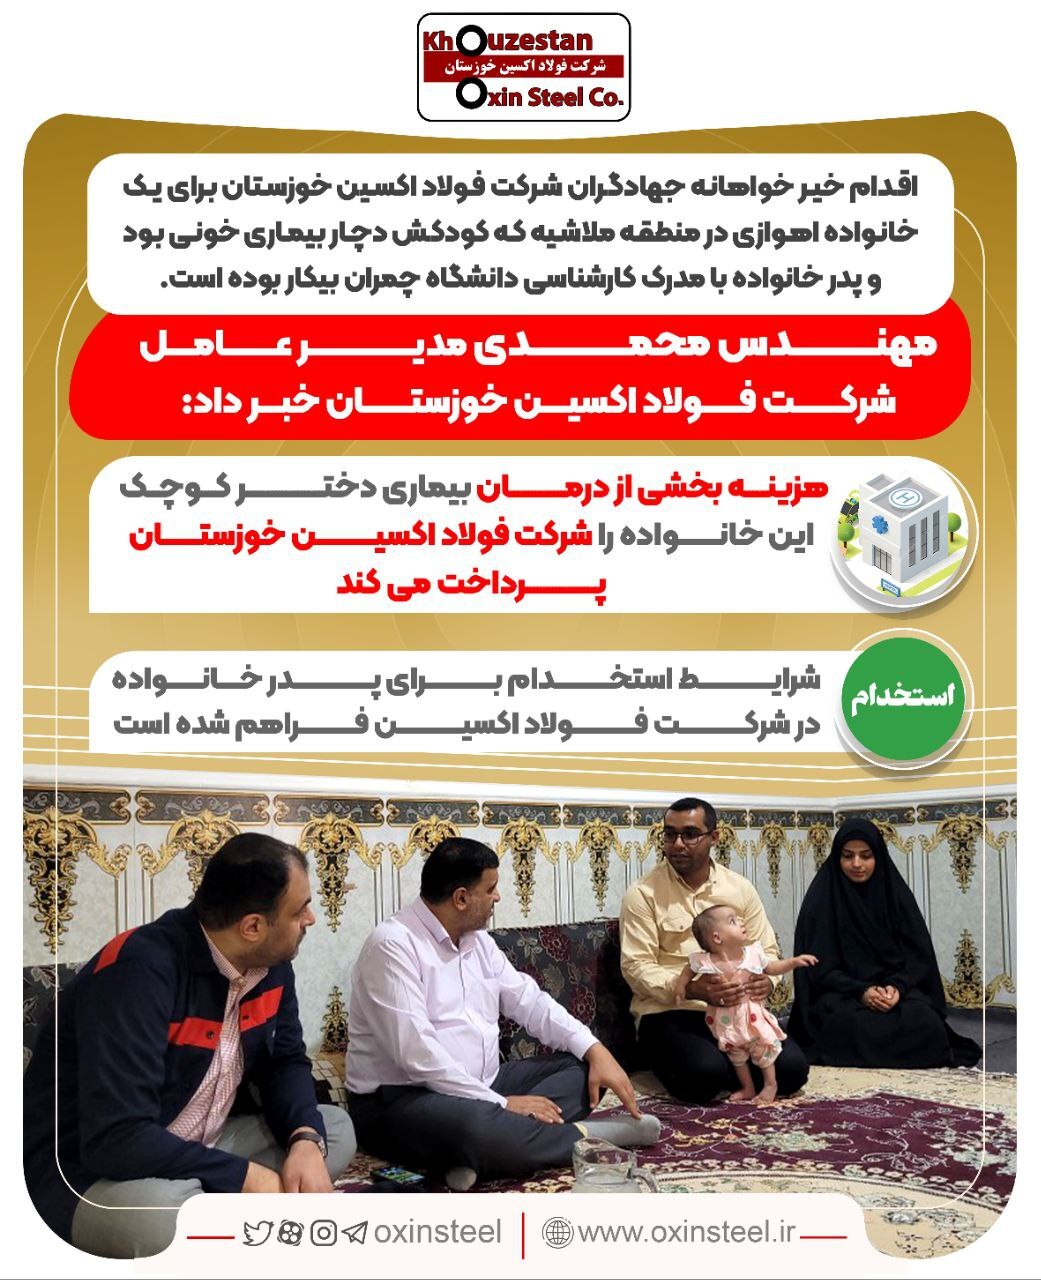 اقدام خیر‌خواهانه جهادگران شرکت «فولاد اکسین خوزستان» برای یک خانواده اهوازی